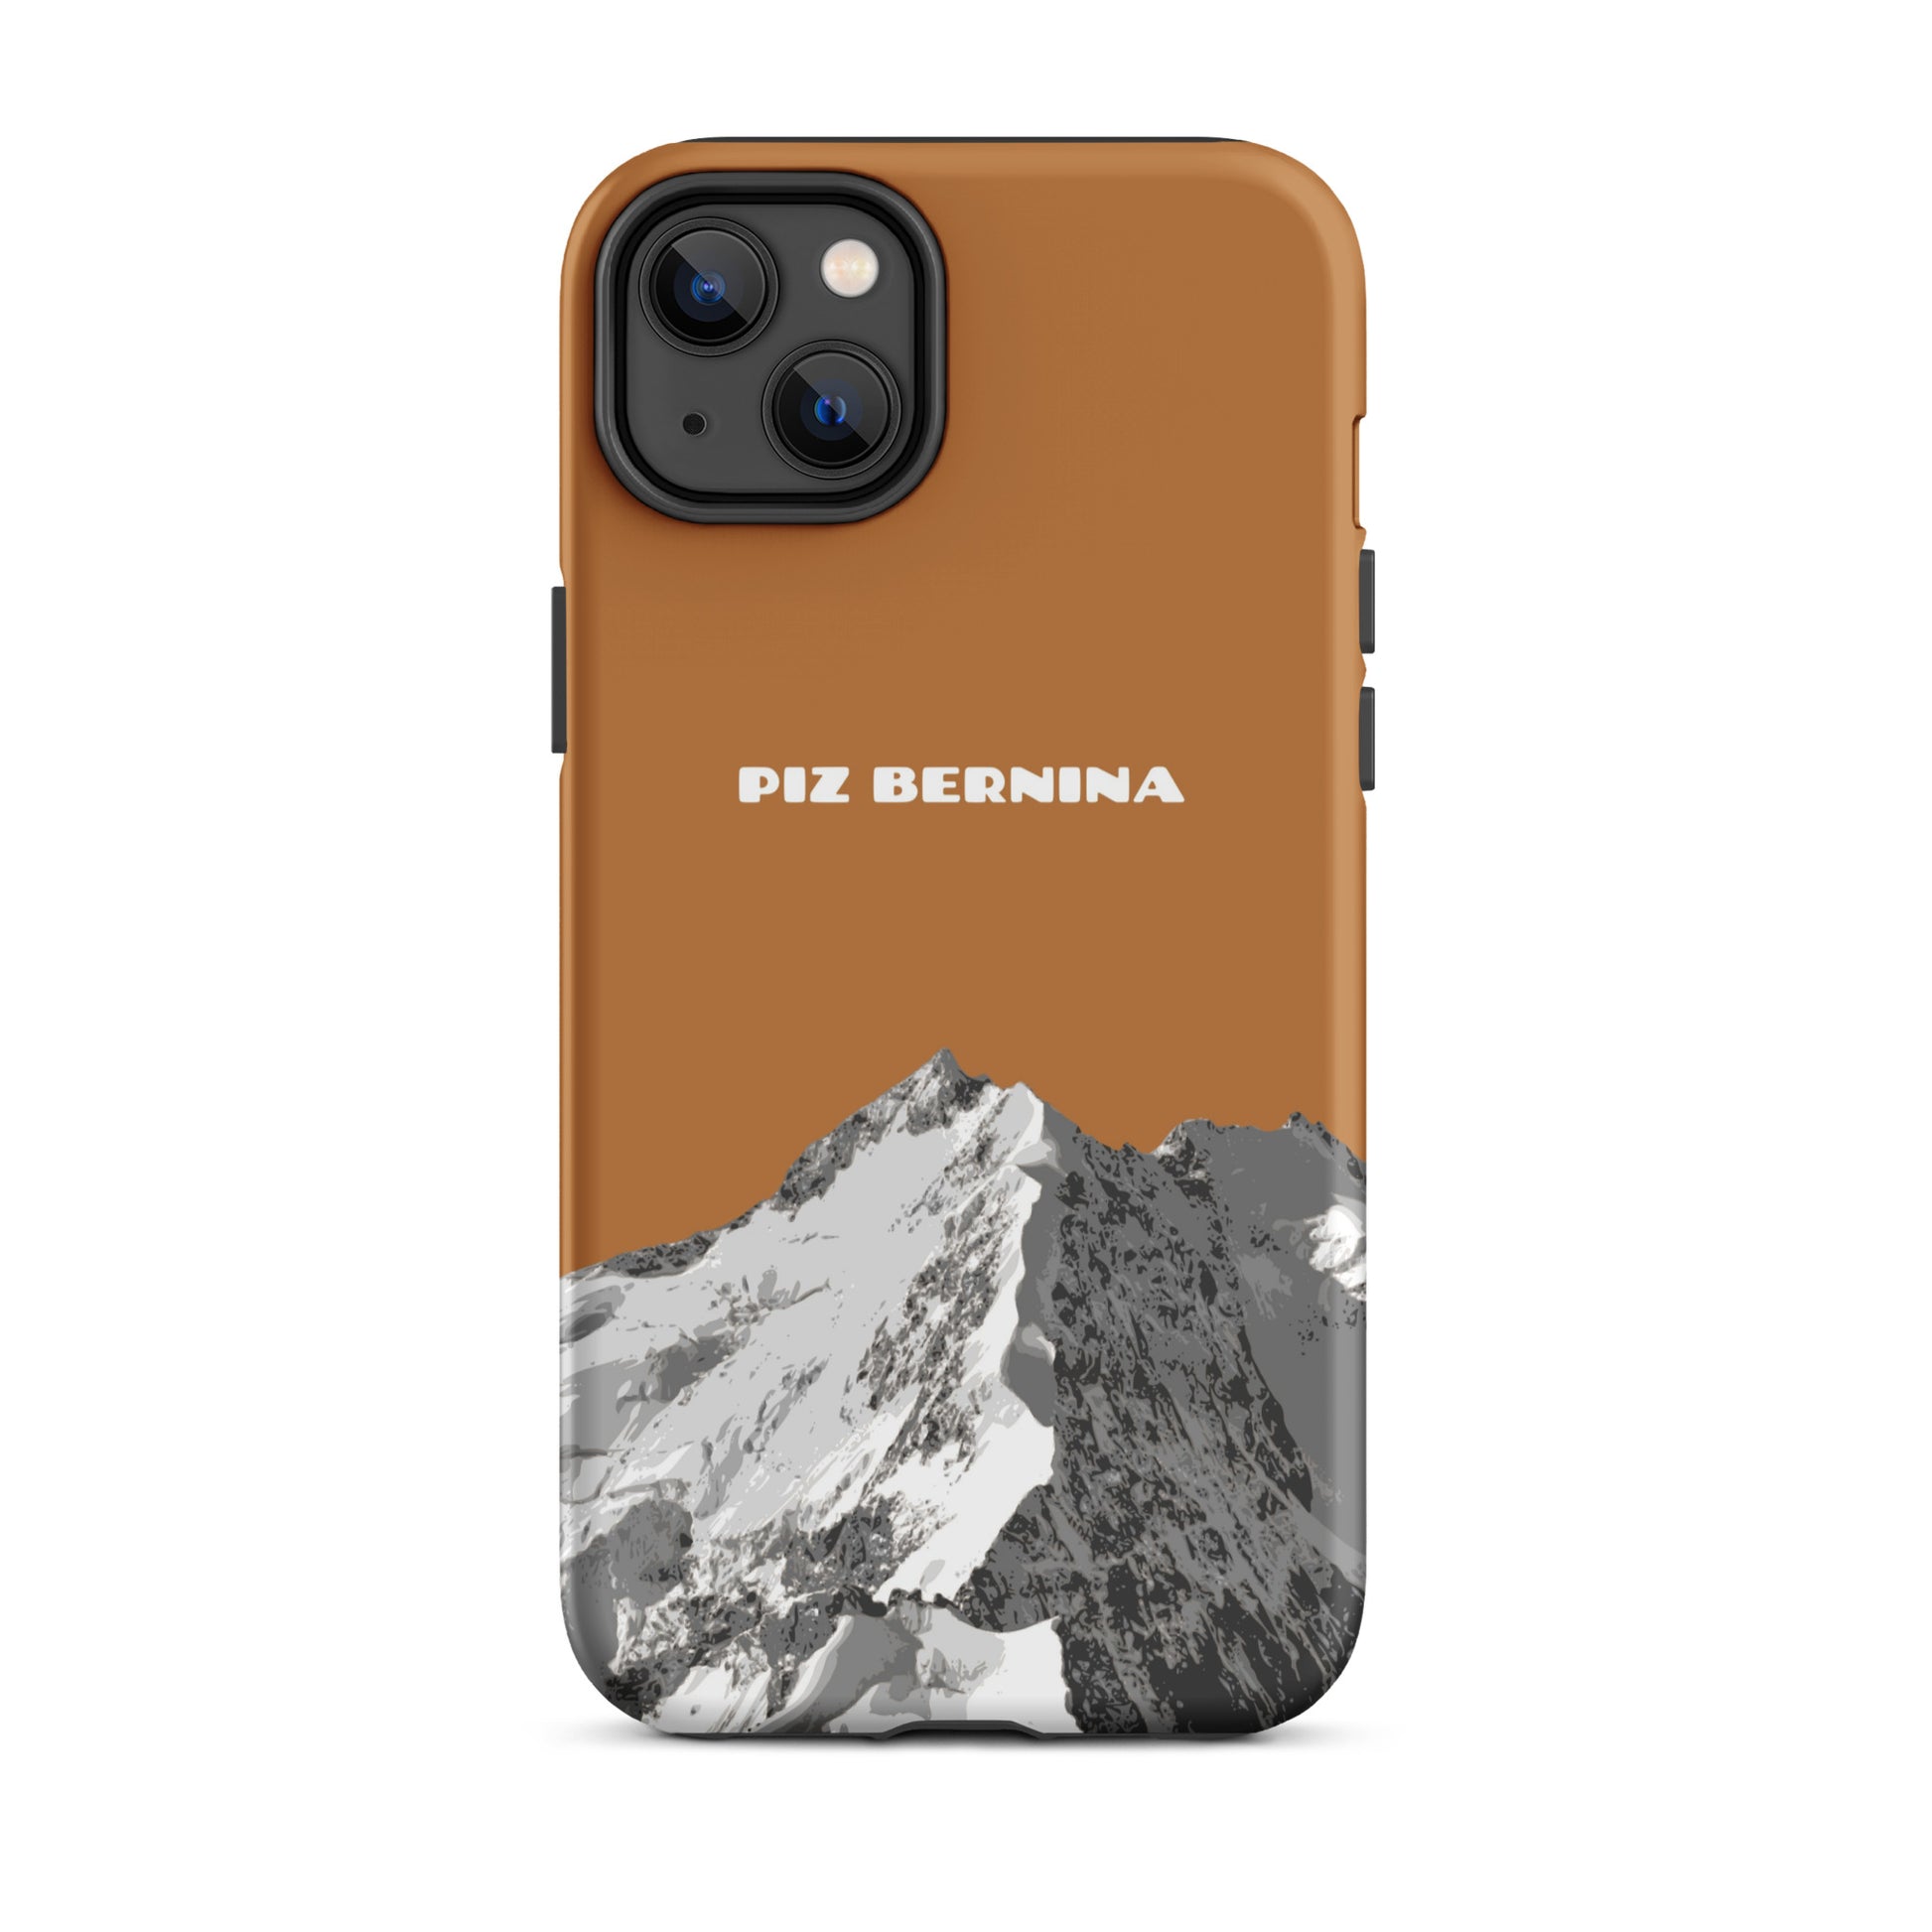 Hülle für das iPhone 14 Plus von Apple in der Farbe Kupfer, dass den Piz Bernina in Graubünden zeigt.